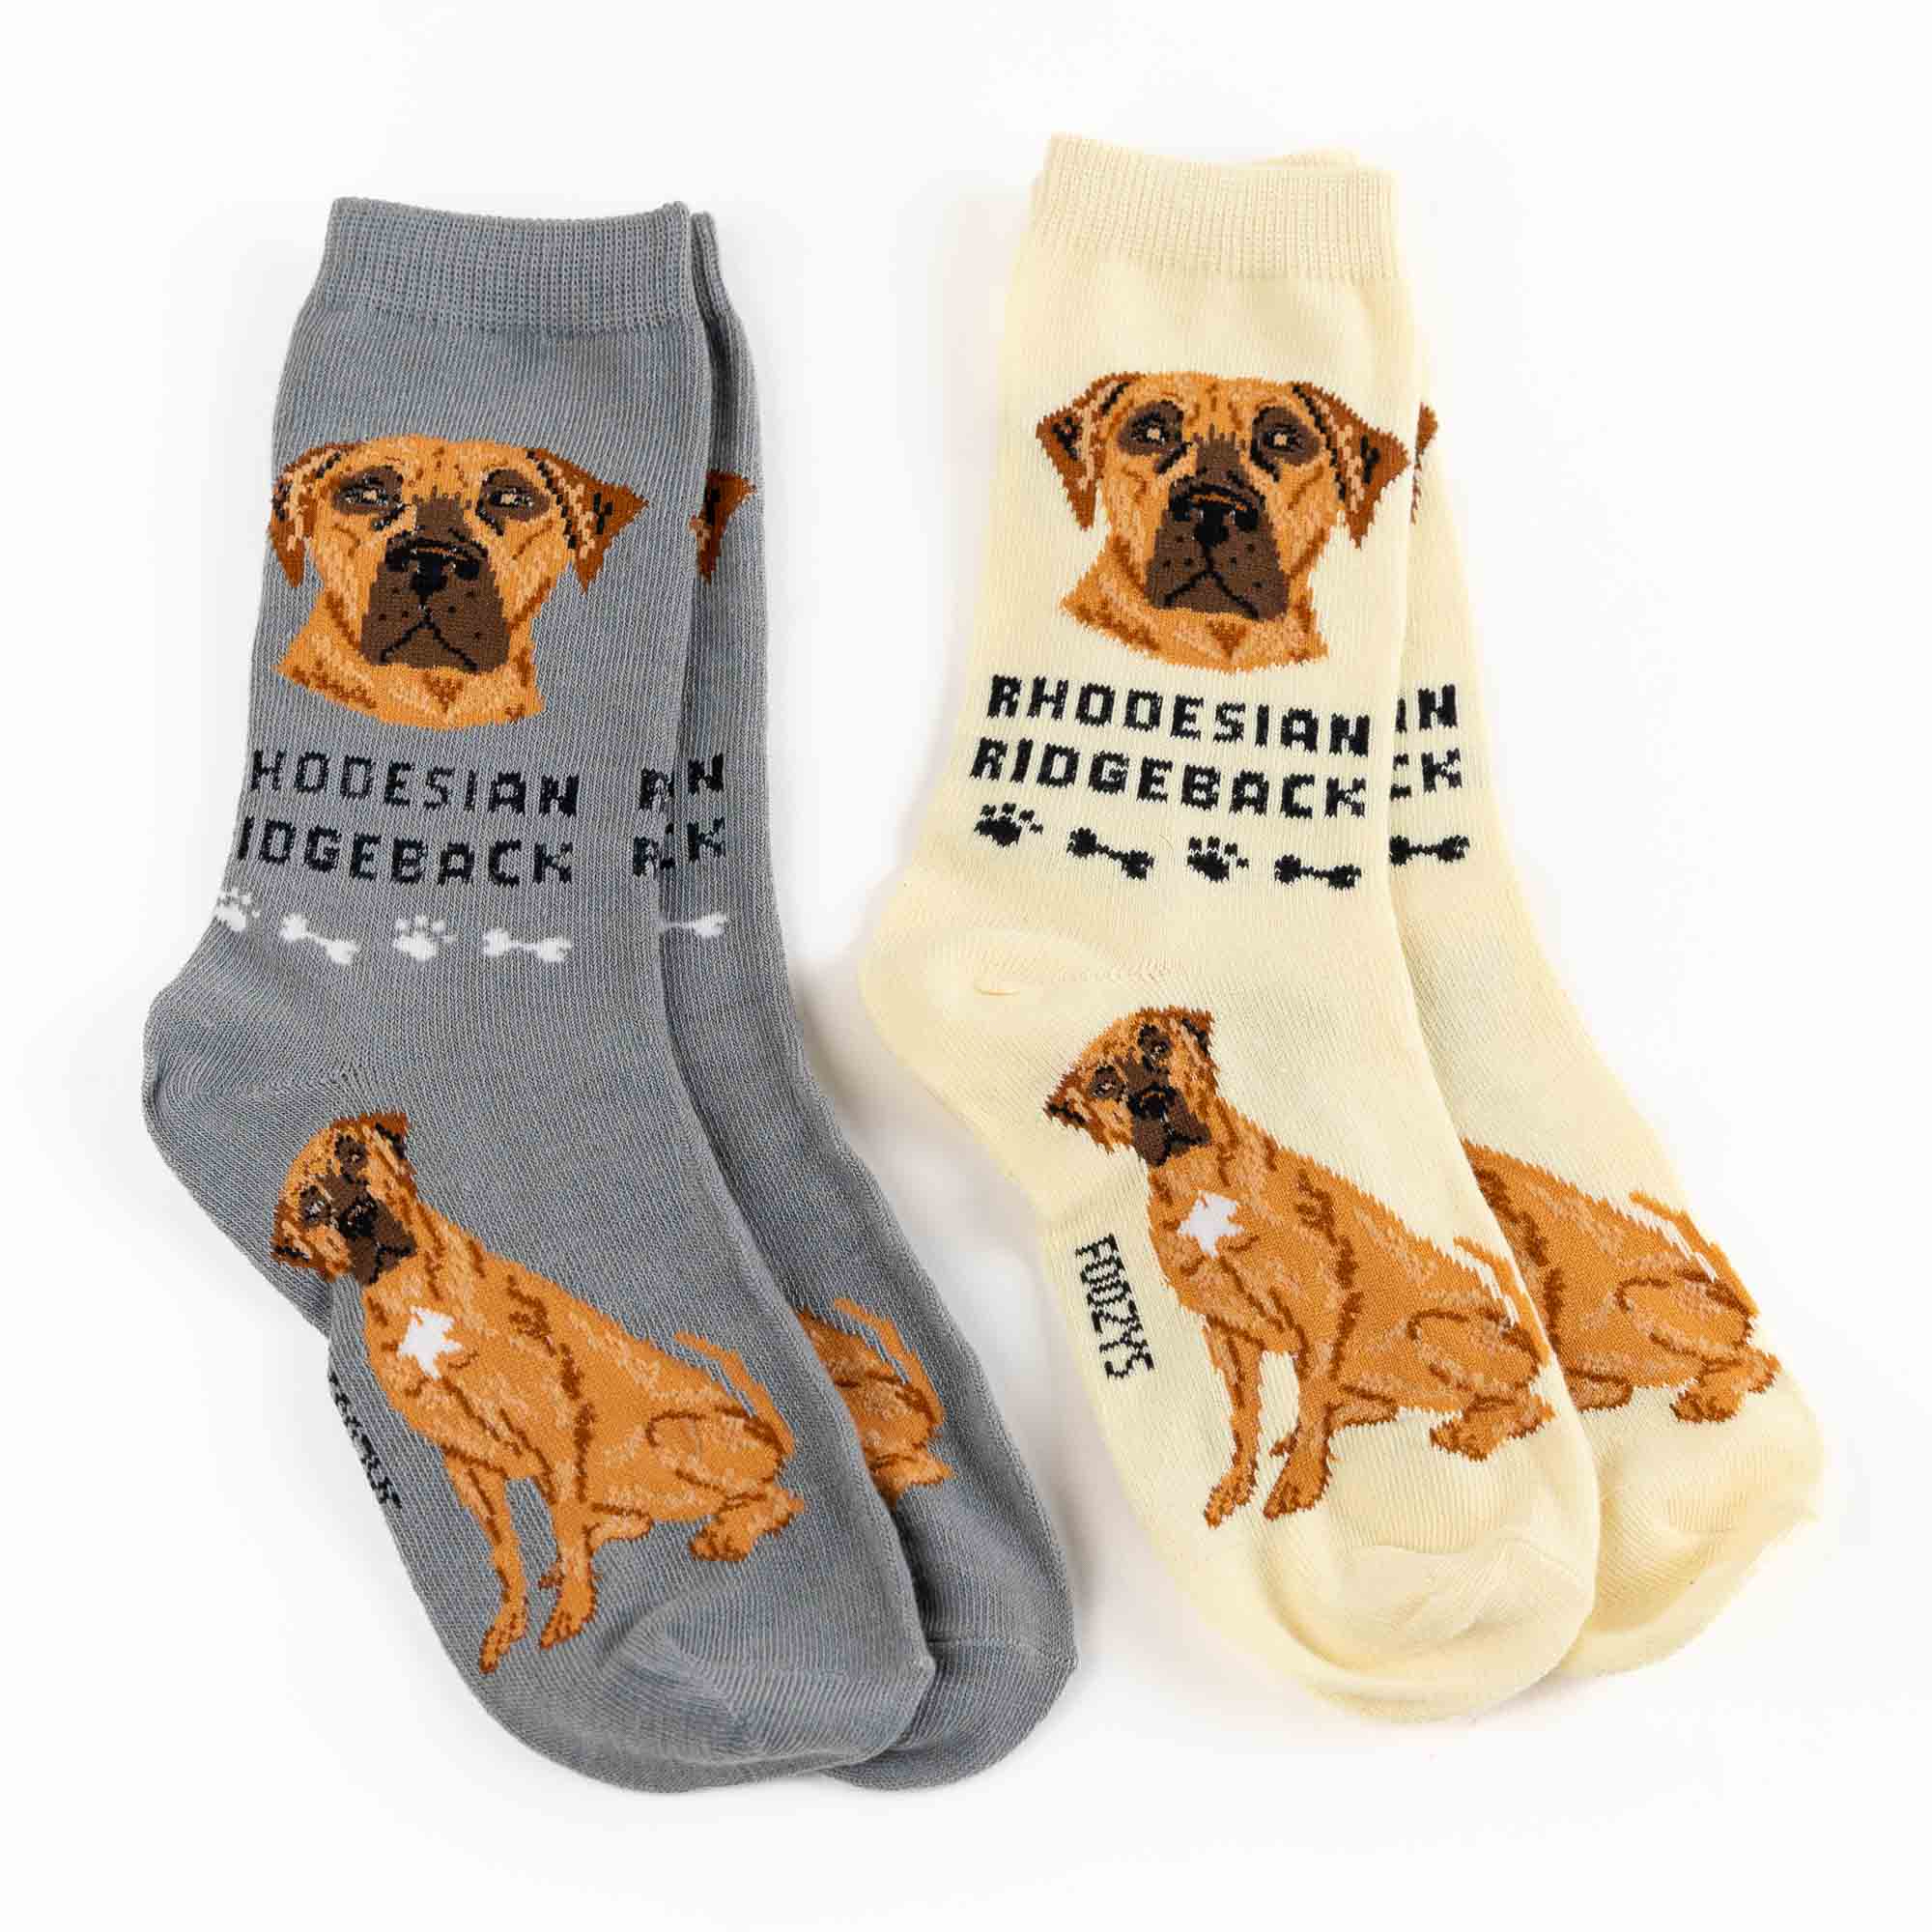 My Favorite Dog Breed Socks ❤️ Poodle - 2 Set Collection